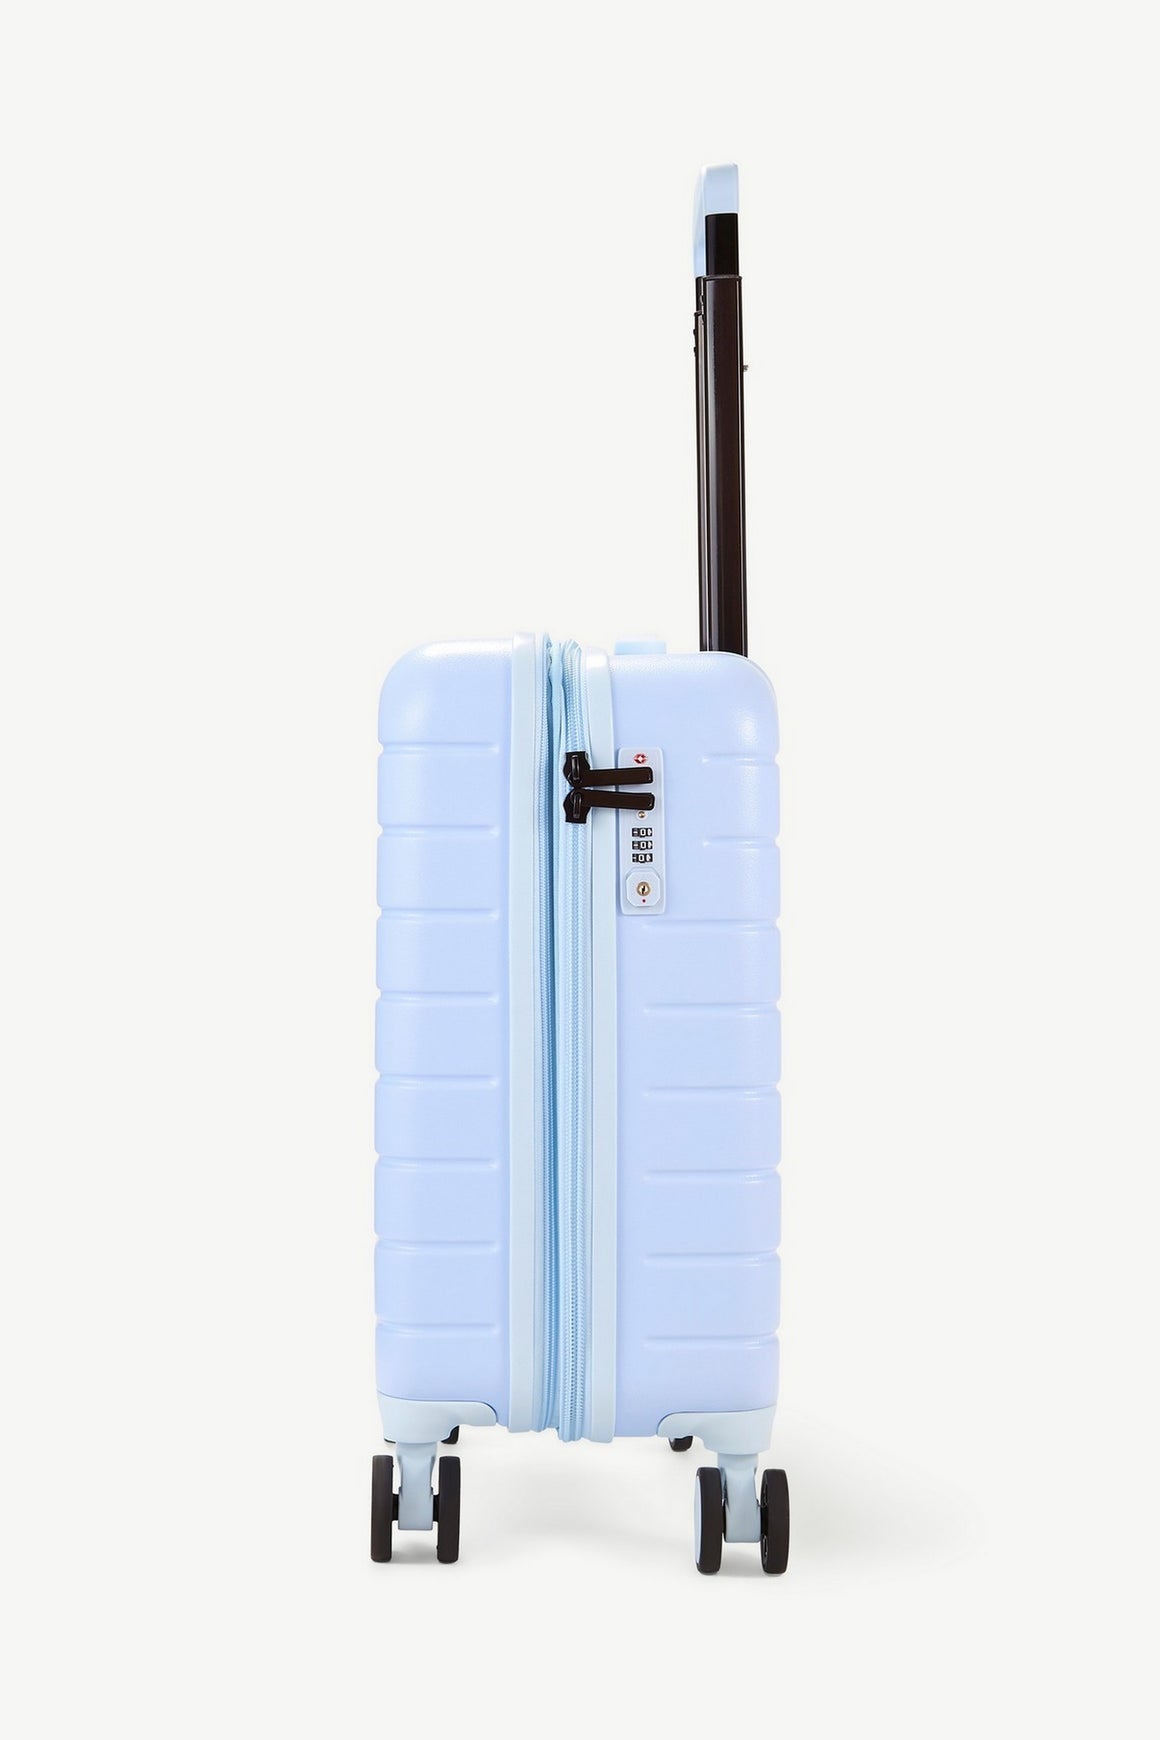 Novo Small Suitcase